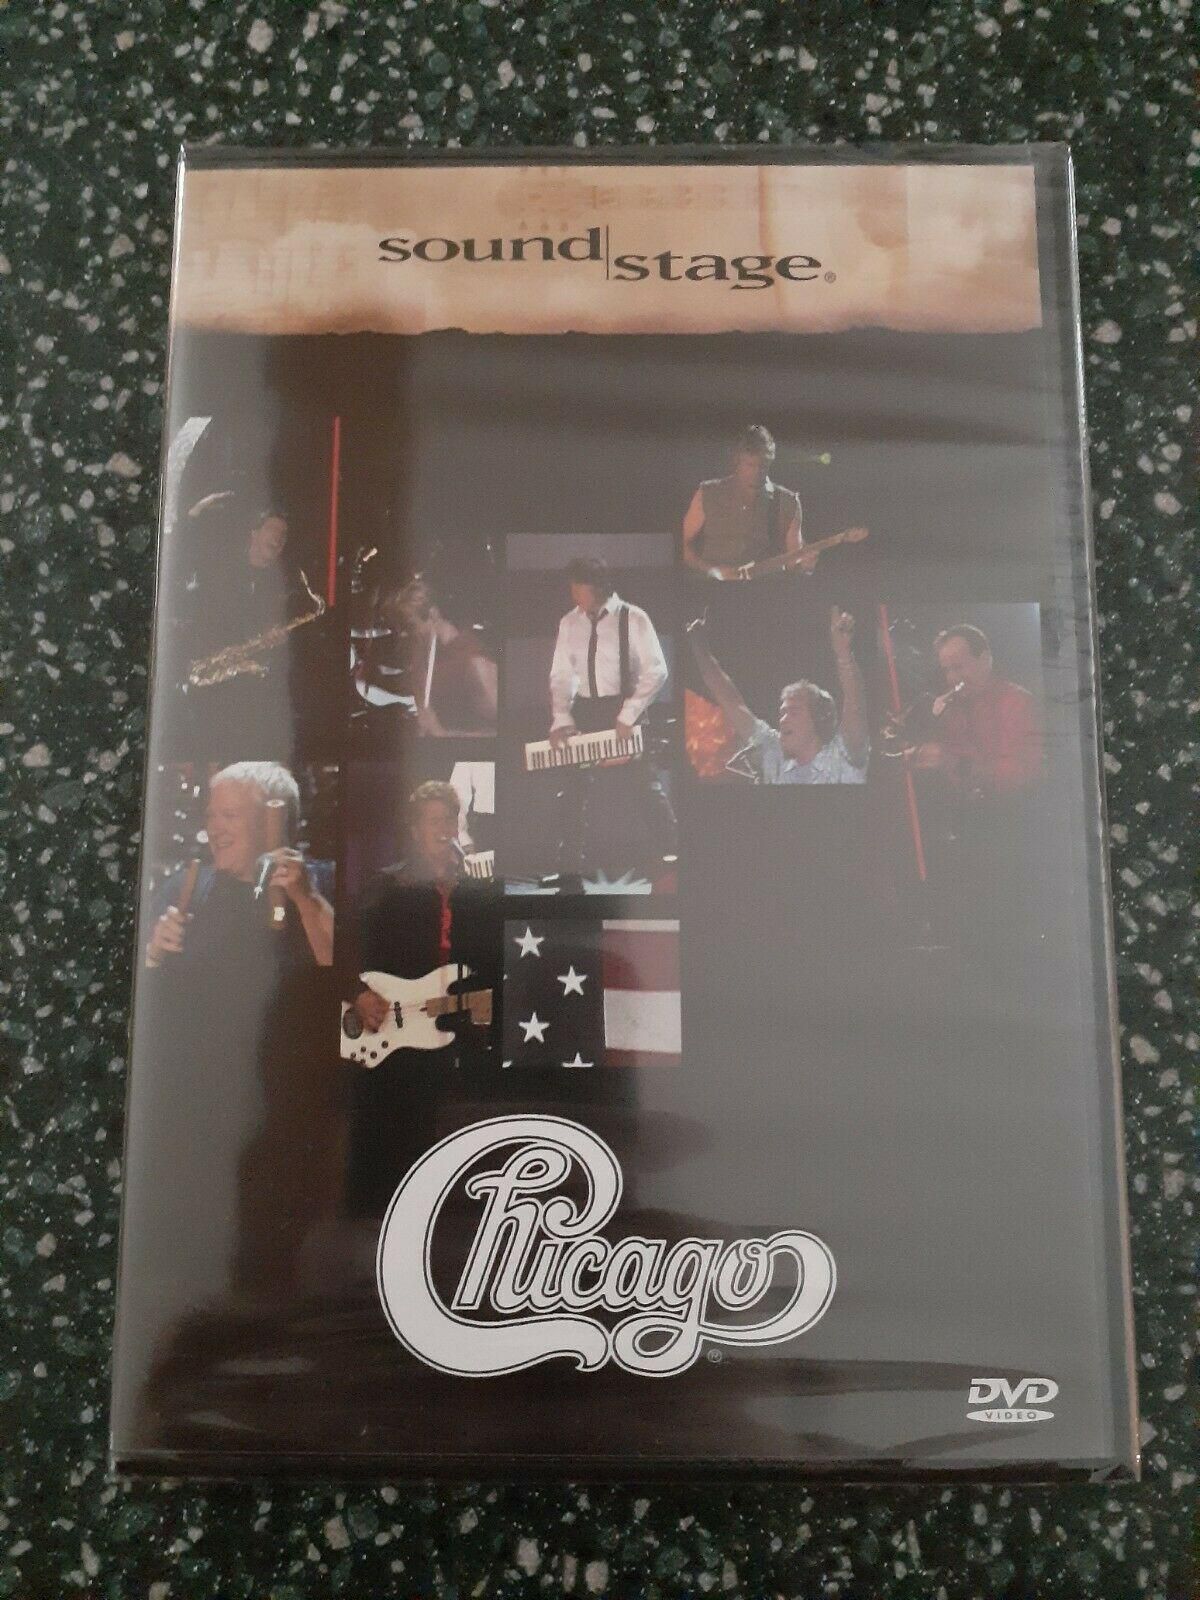 SOUND STAGE - CHICAGO - Live DVD